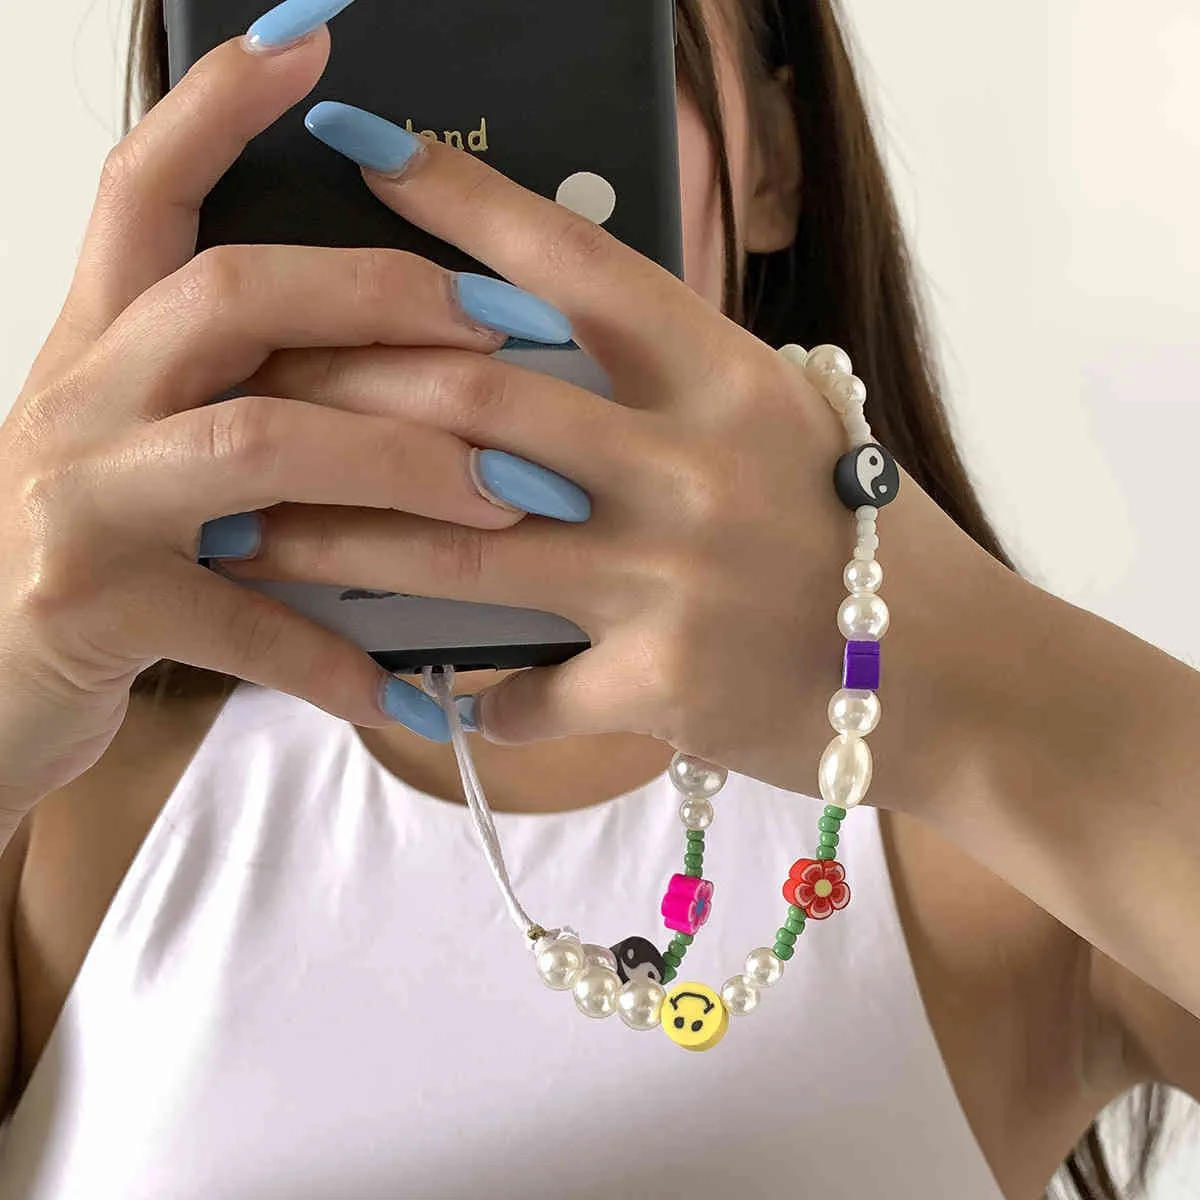 أحزمة الهاتف المحمول وسلسلة المجوهرات بالخرز للهاتف الخلوي البوهيمي البسيط.